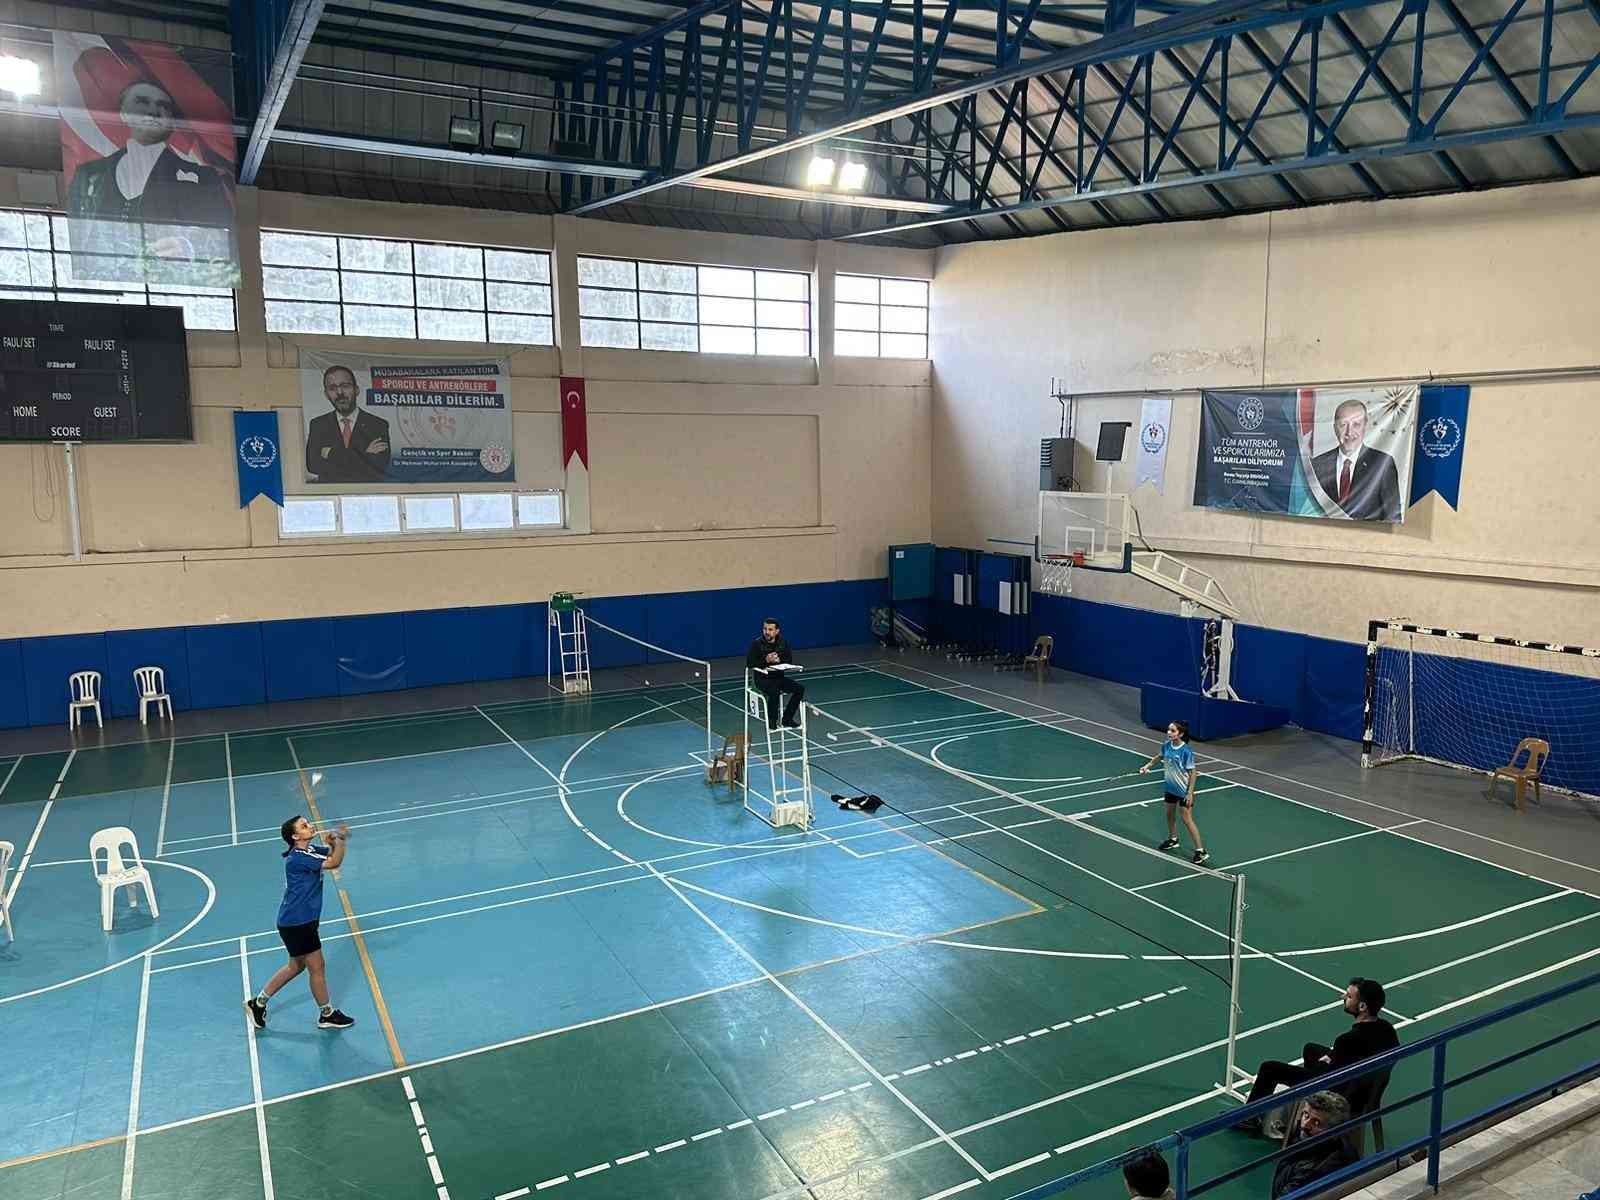 Aydın’da badminton turnuvası heyecanı son buldu